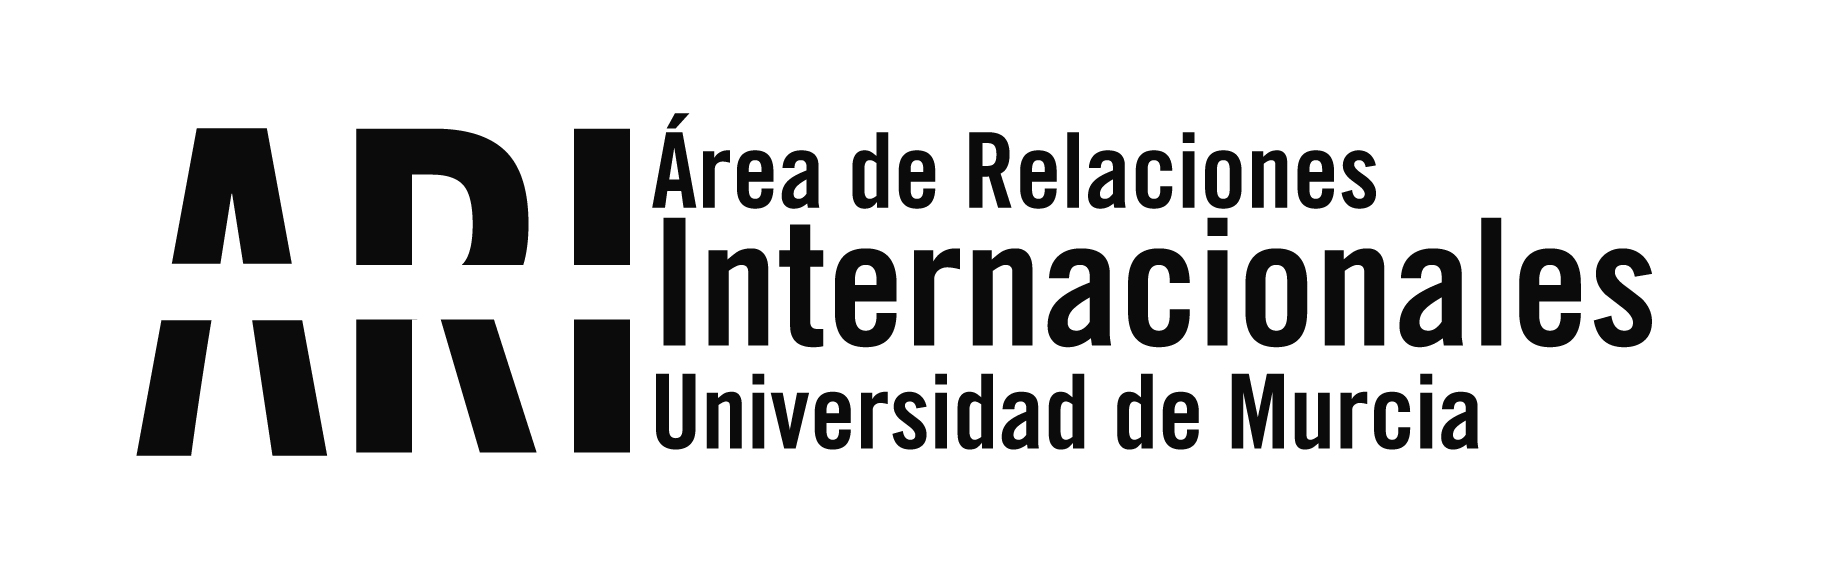 Boletín informativo de Internacionalización 19/2021 // 20 de julio de 2021 - Área de Relaciones Internacionales